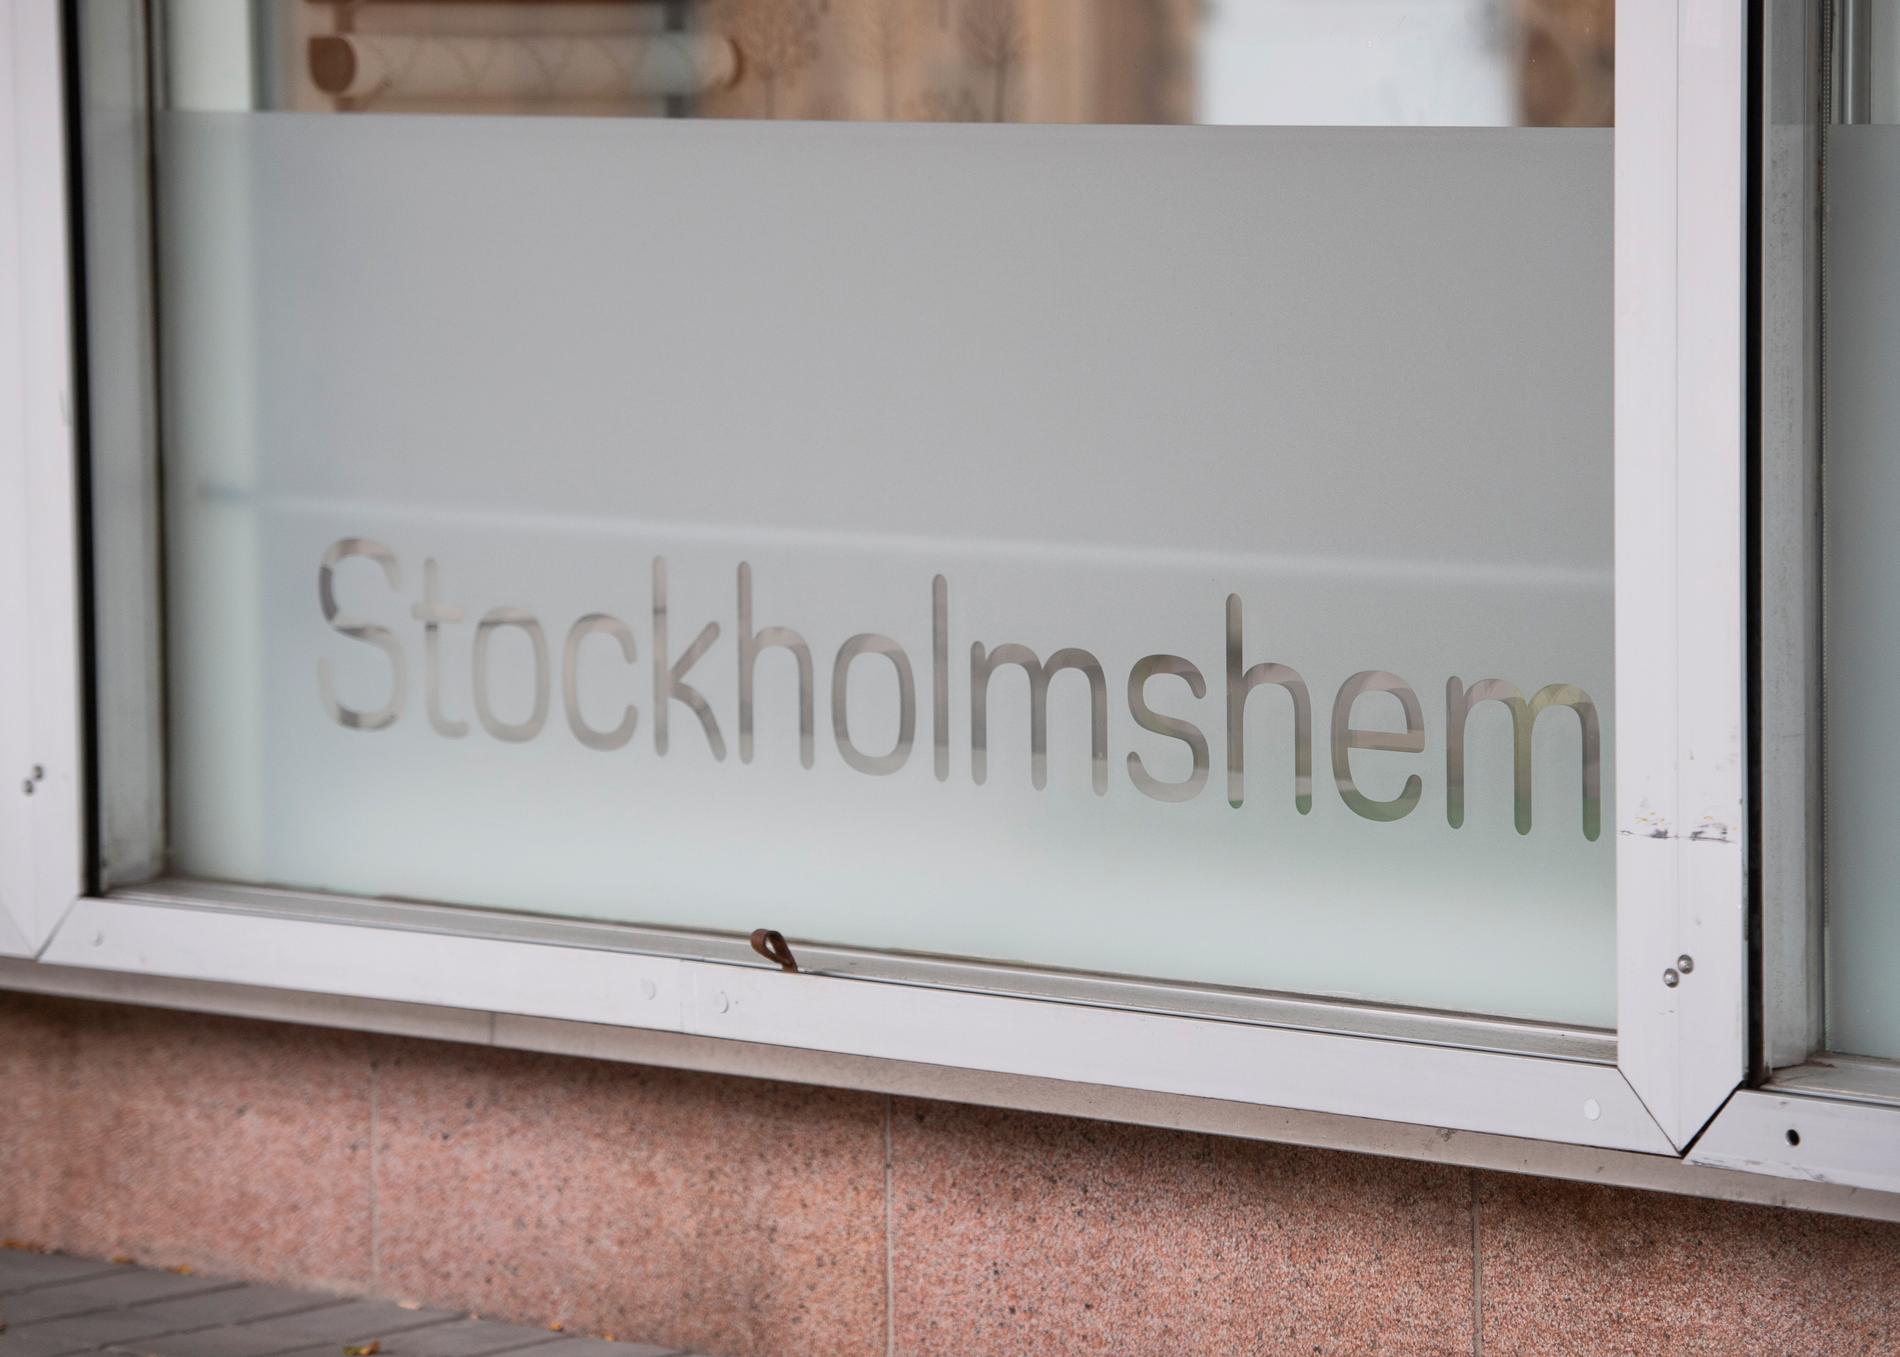 Stockholmshem har valt att inte ta ärendet vidare till polisen.